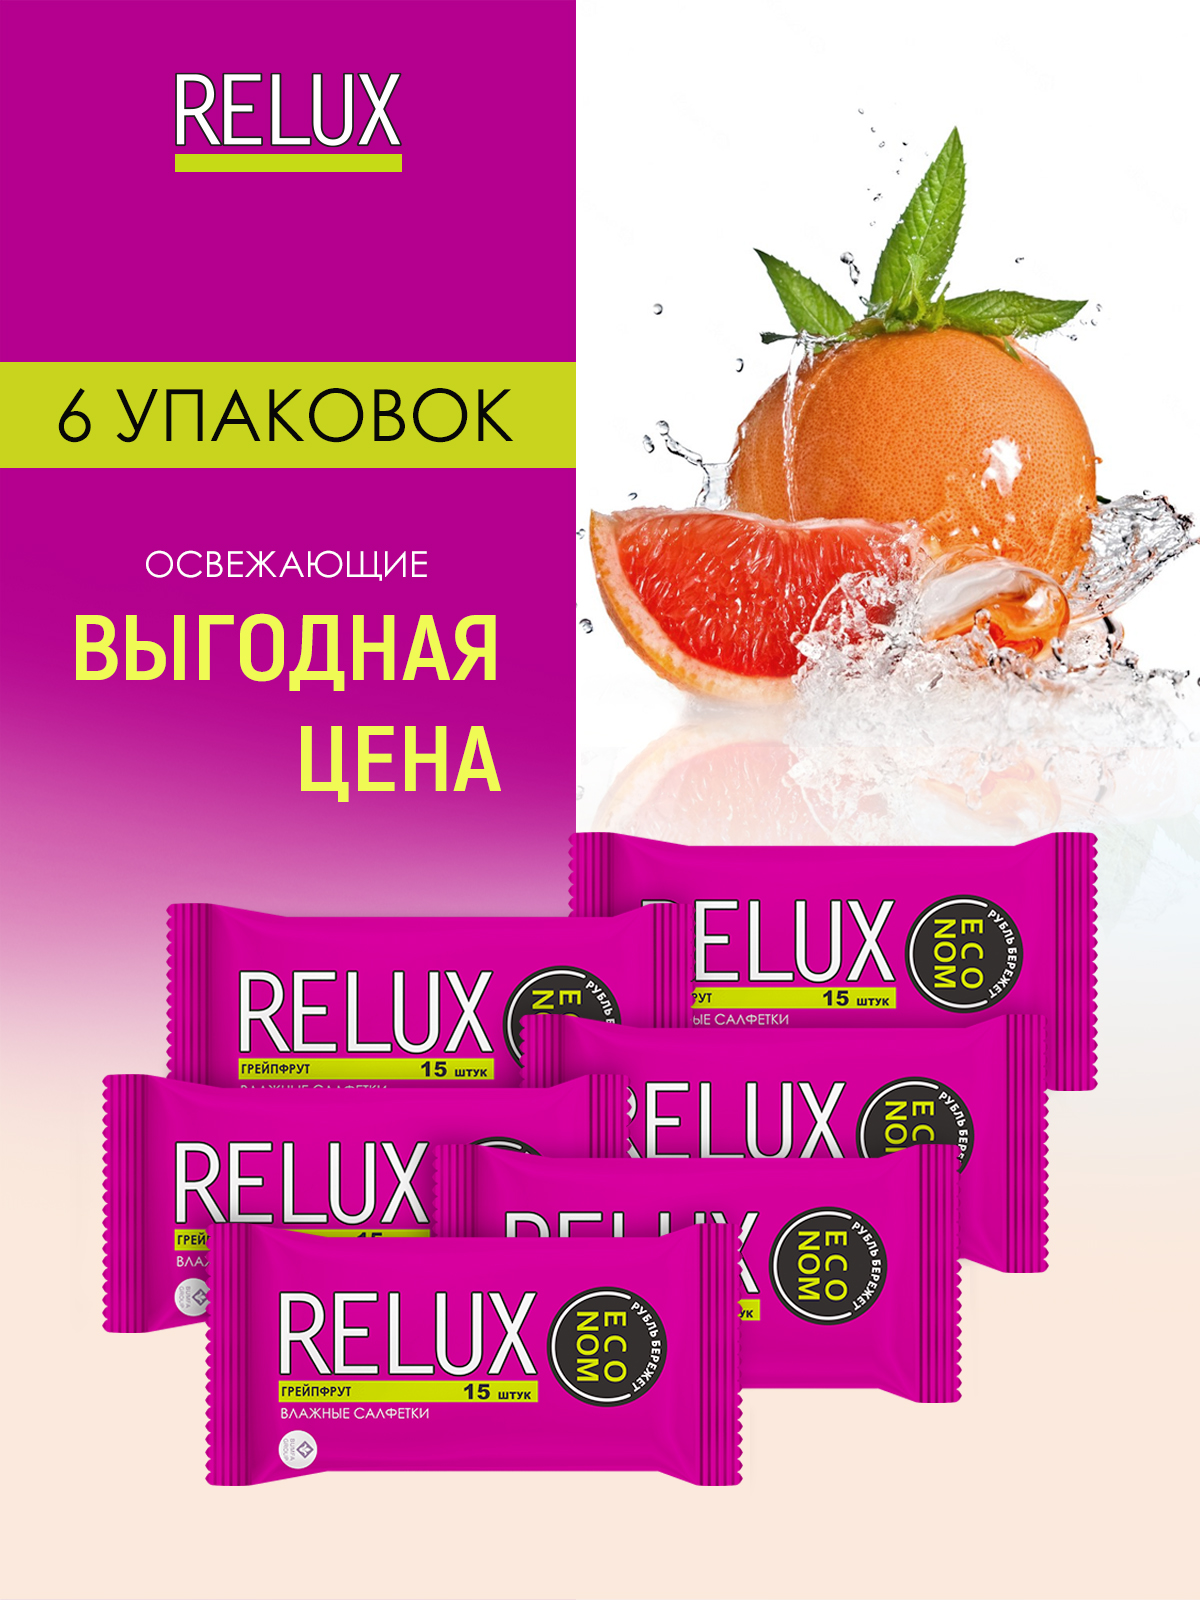 Салфетки влажные Relux освежающие грейпфрут 15шт 6 упаковок relux салфетки влажные освежающие кокос 15 0